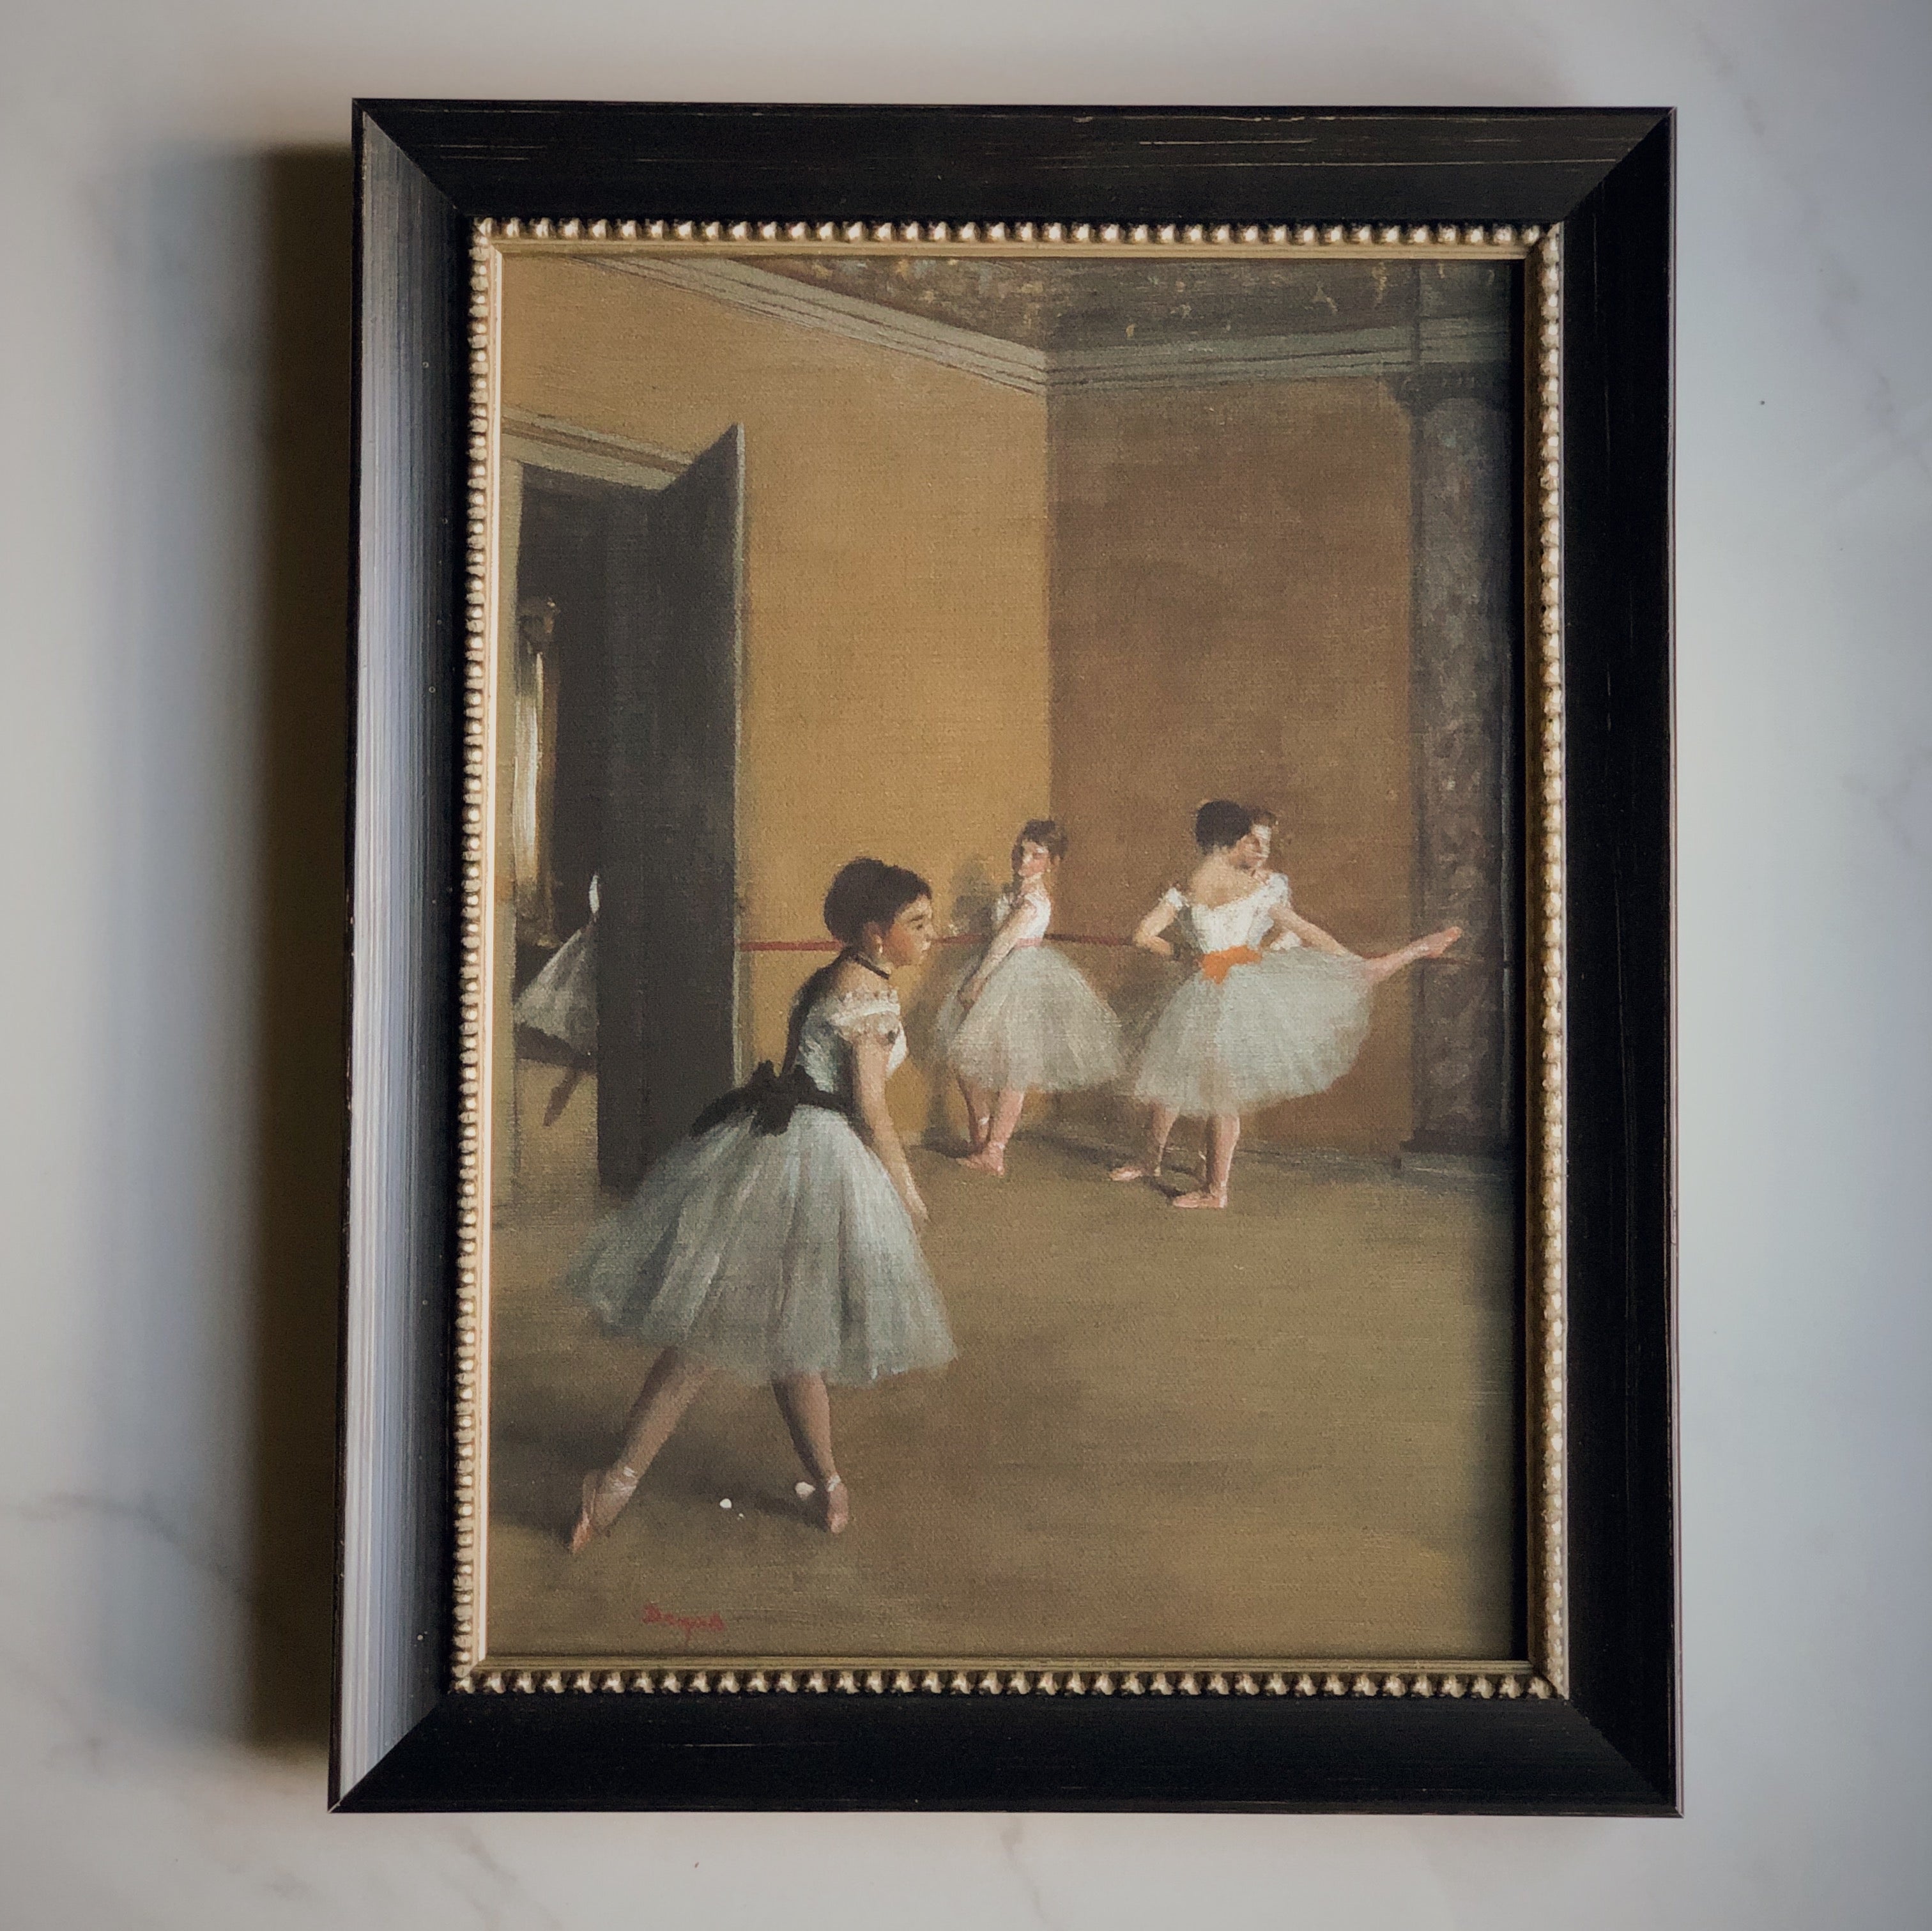 décoration mural peinture classique vintage imprimé sur canevas toile rigide encadrement ballet dancers degas CLASSICAL PAINTING - STRETCHED FLAT CANVAS - SUR MON X BOUTIQUE